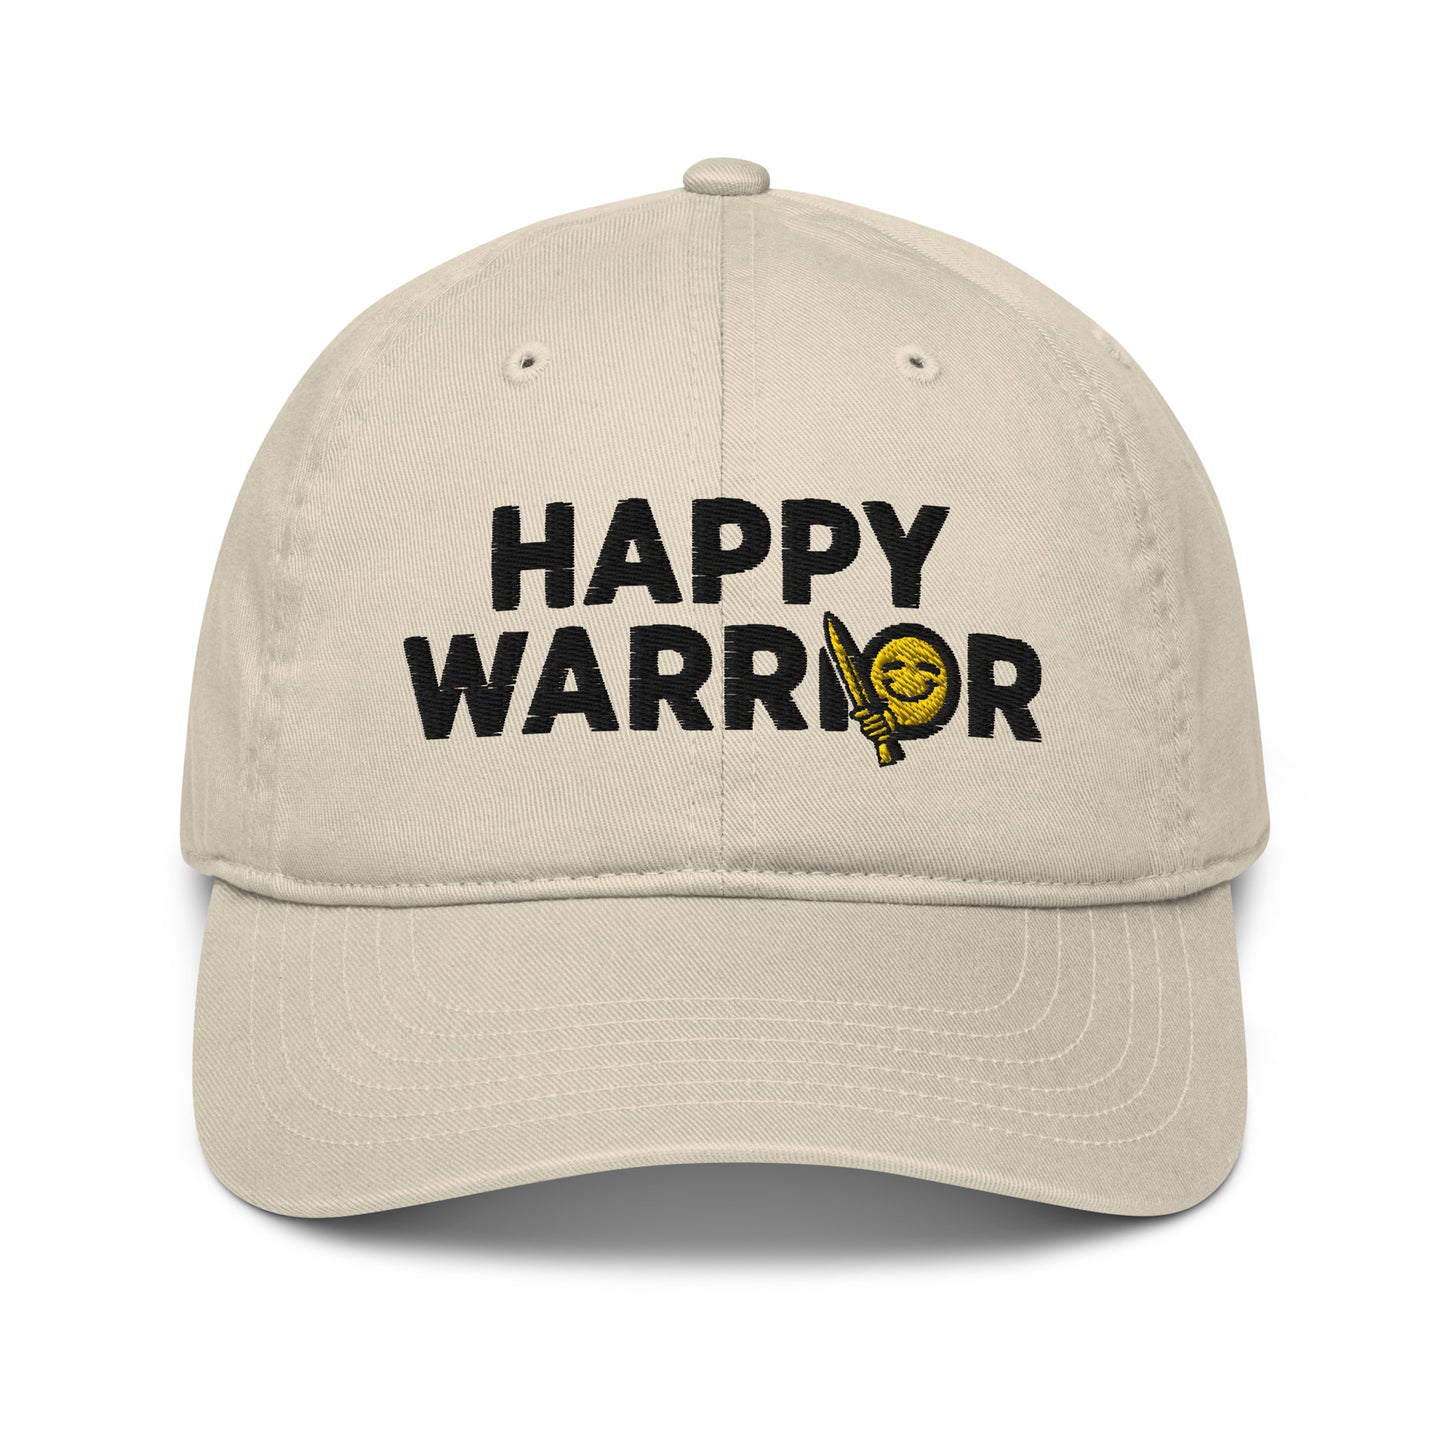 Happy Warrior dad hat